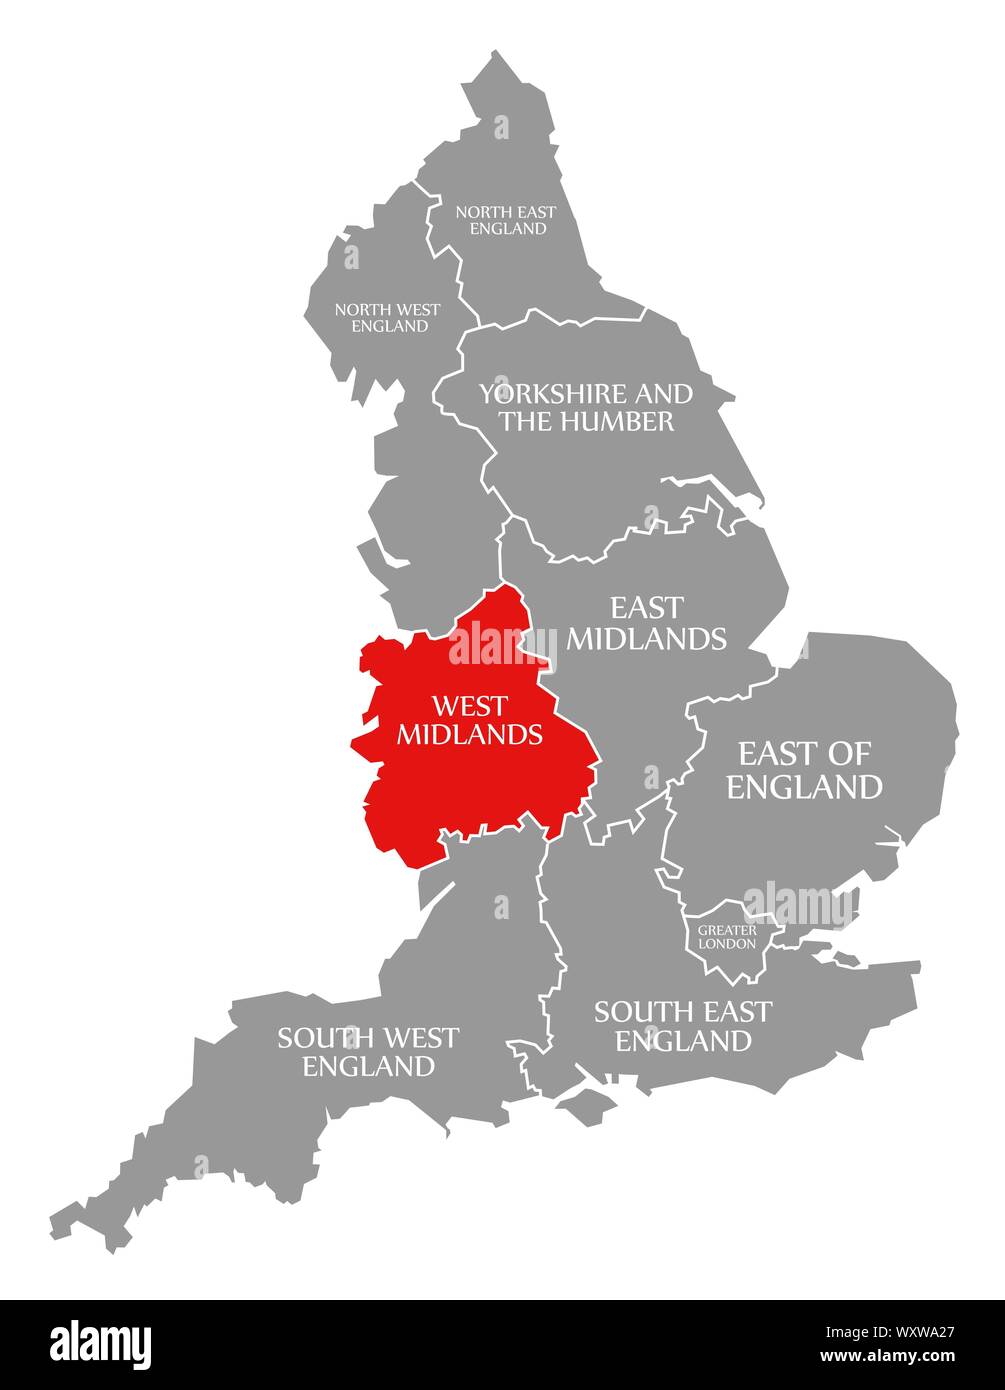 West Midlands rot hervorgehoben Karte von England Großbritannien Stockfoto